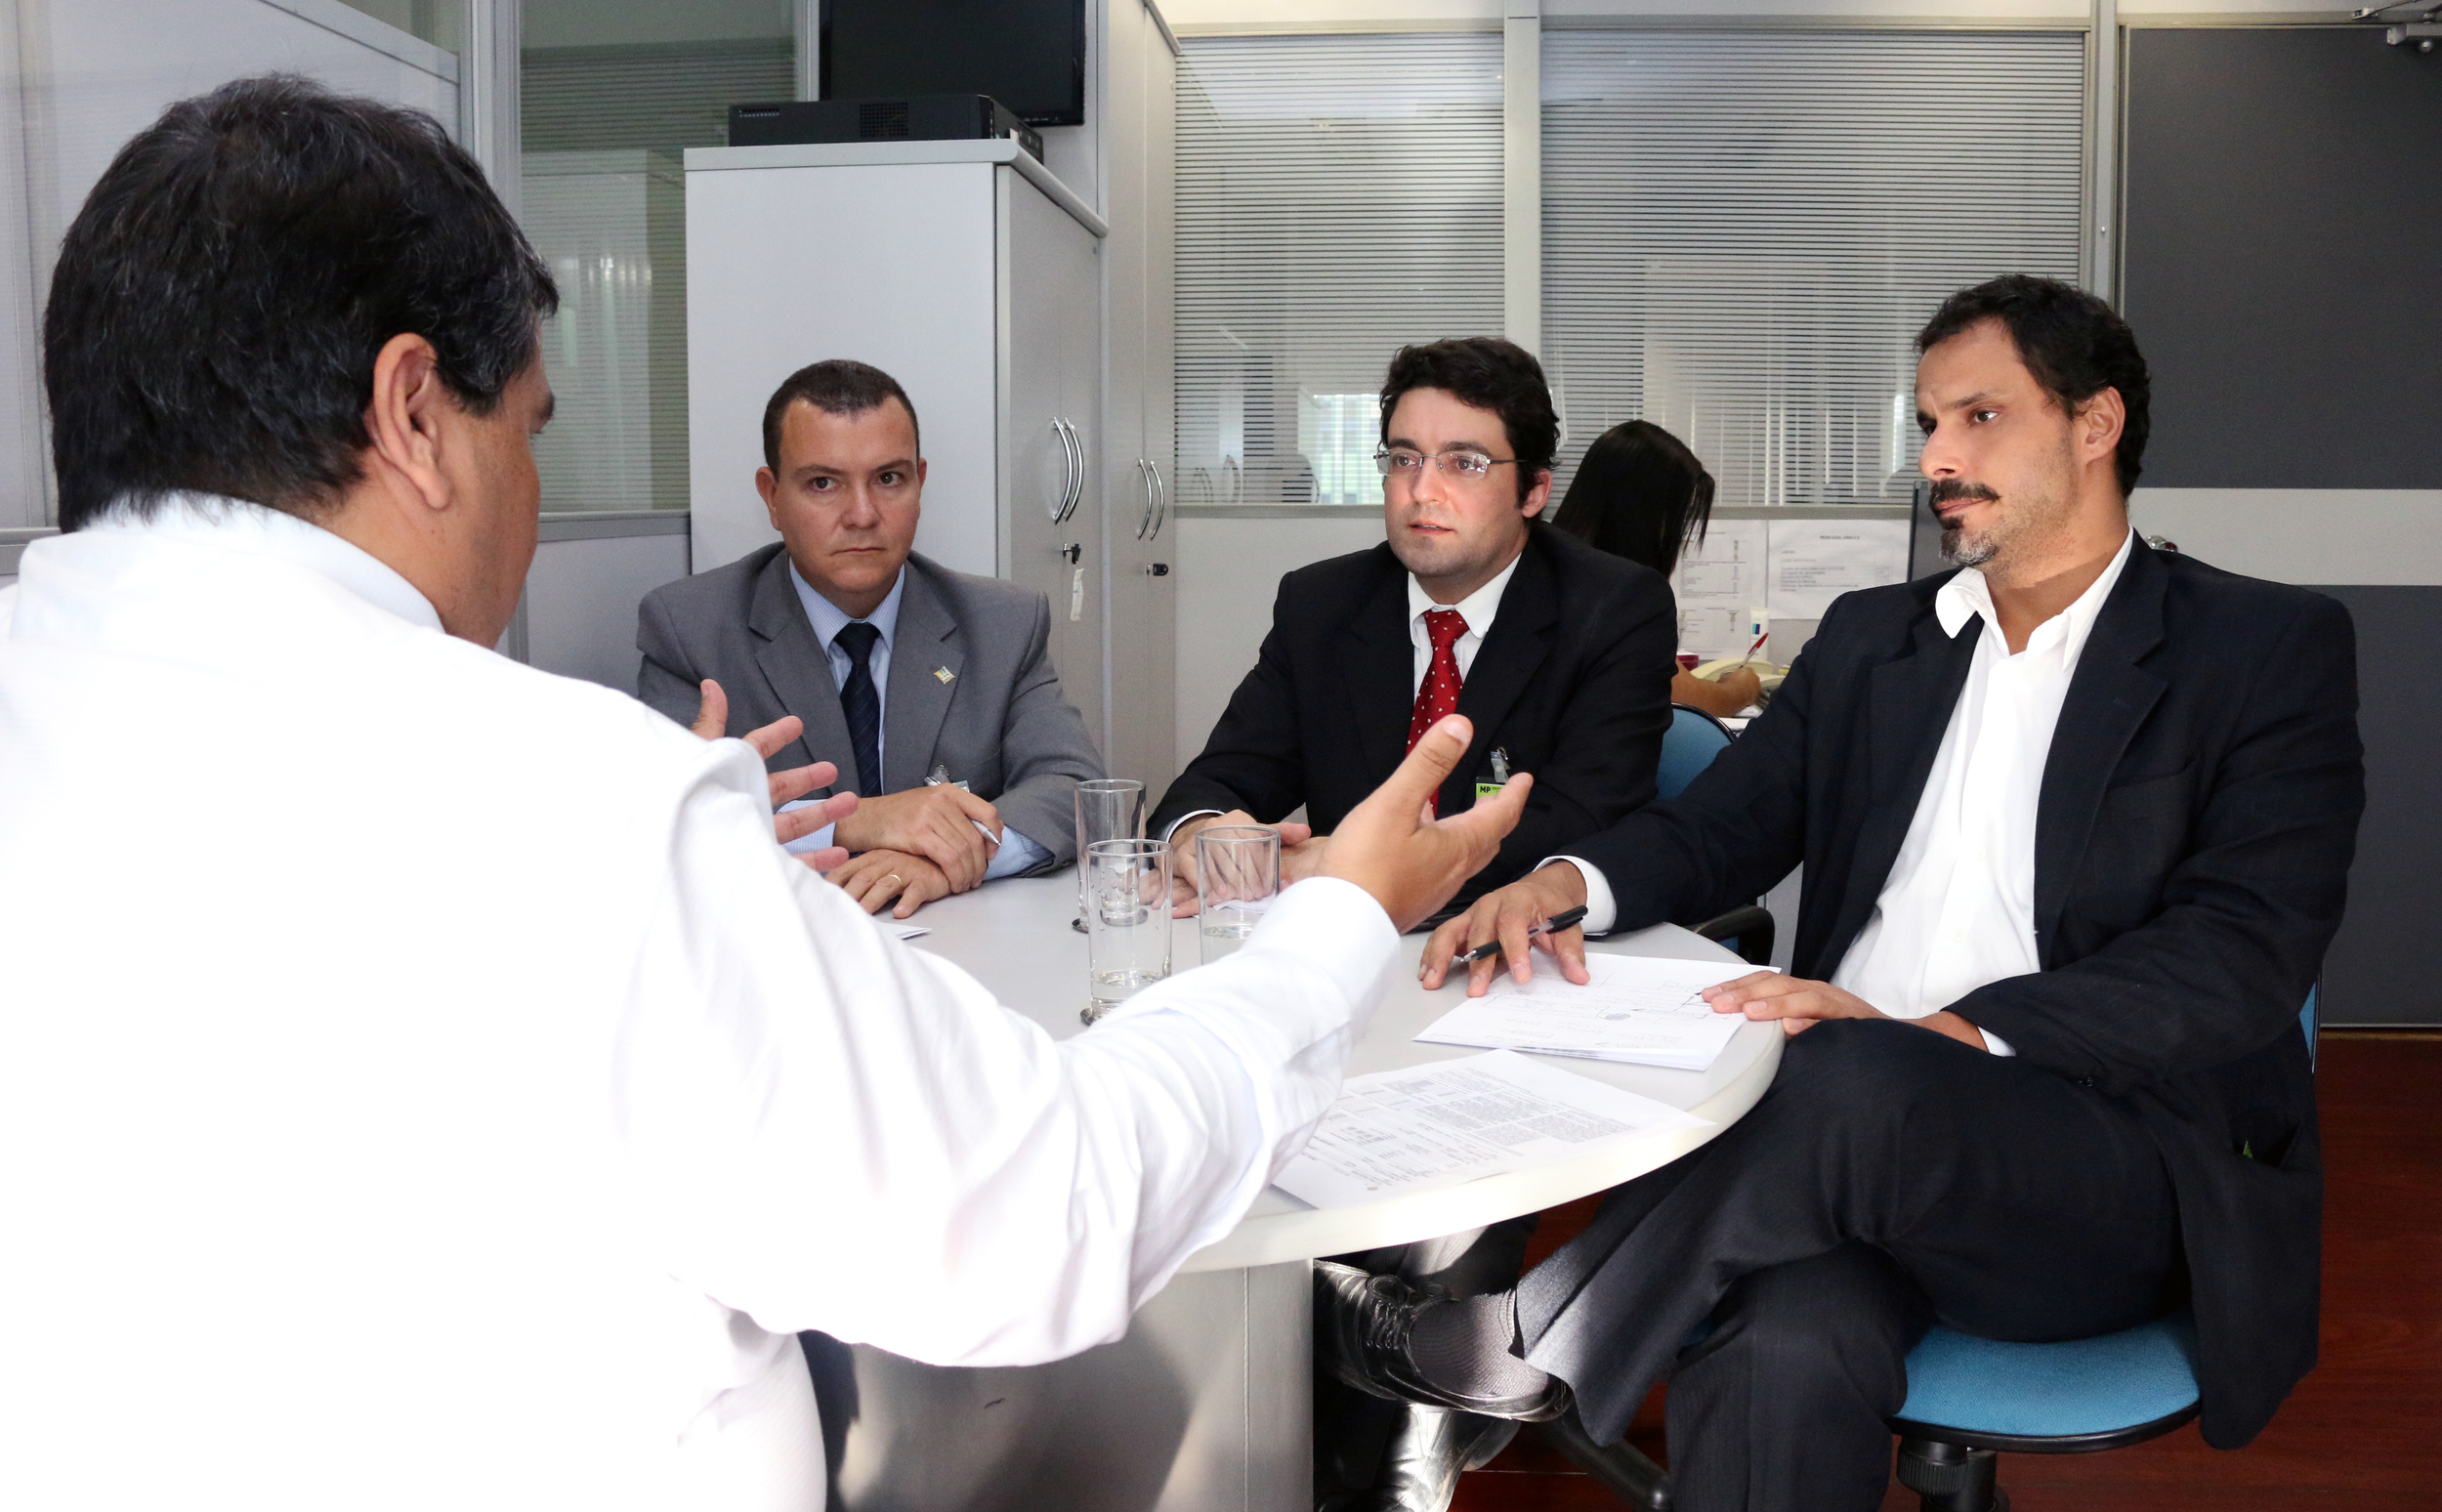 Tito Fróes, João Aurélio, Alex Canuto e Andrei Soares em reunião. Foto: Filipe Calmon / ANESP